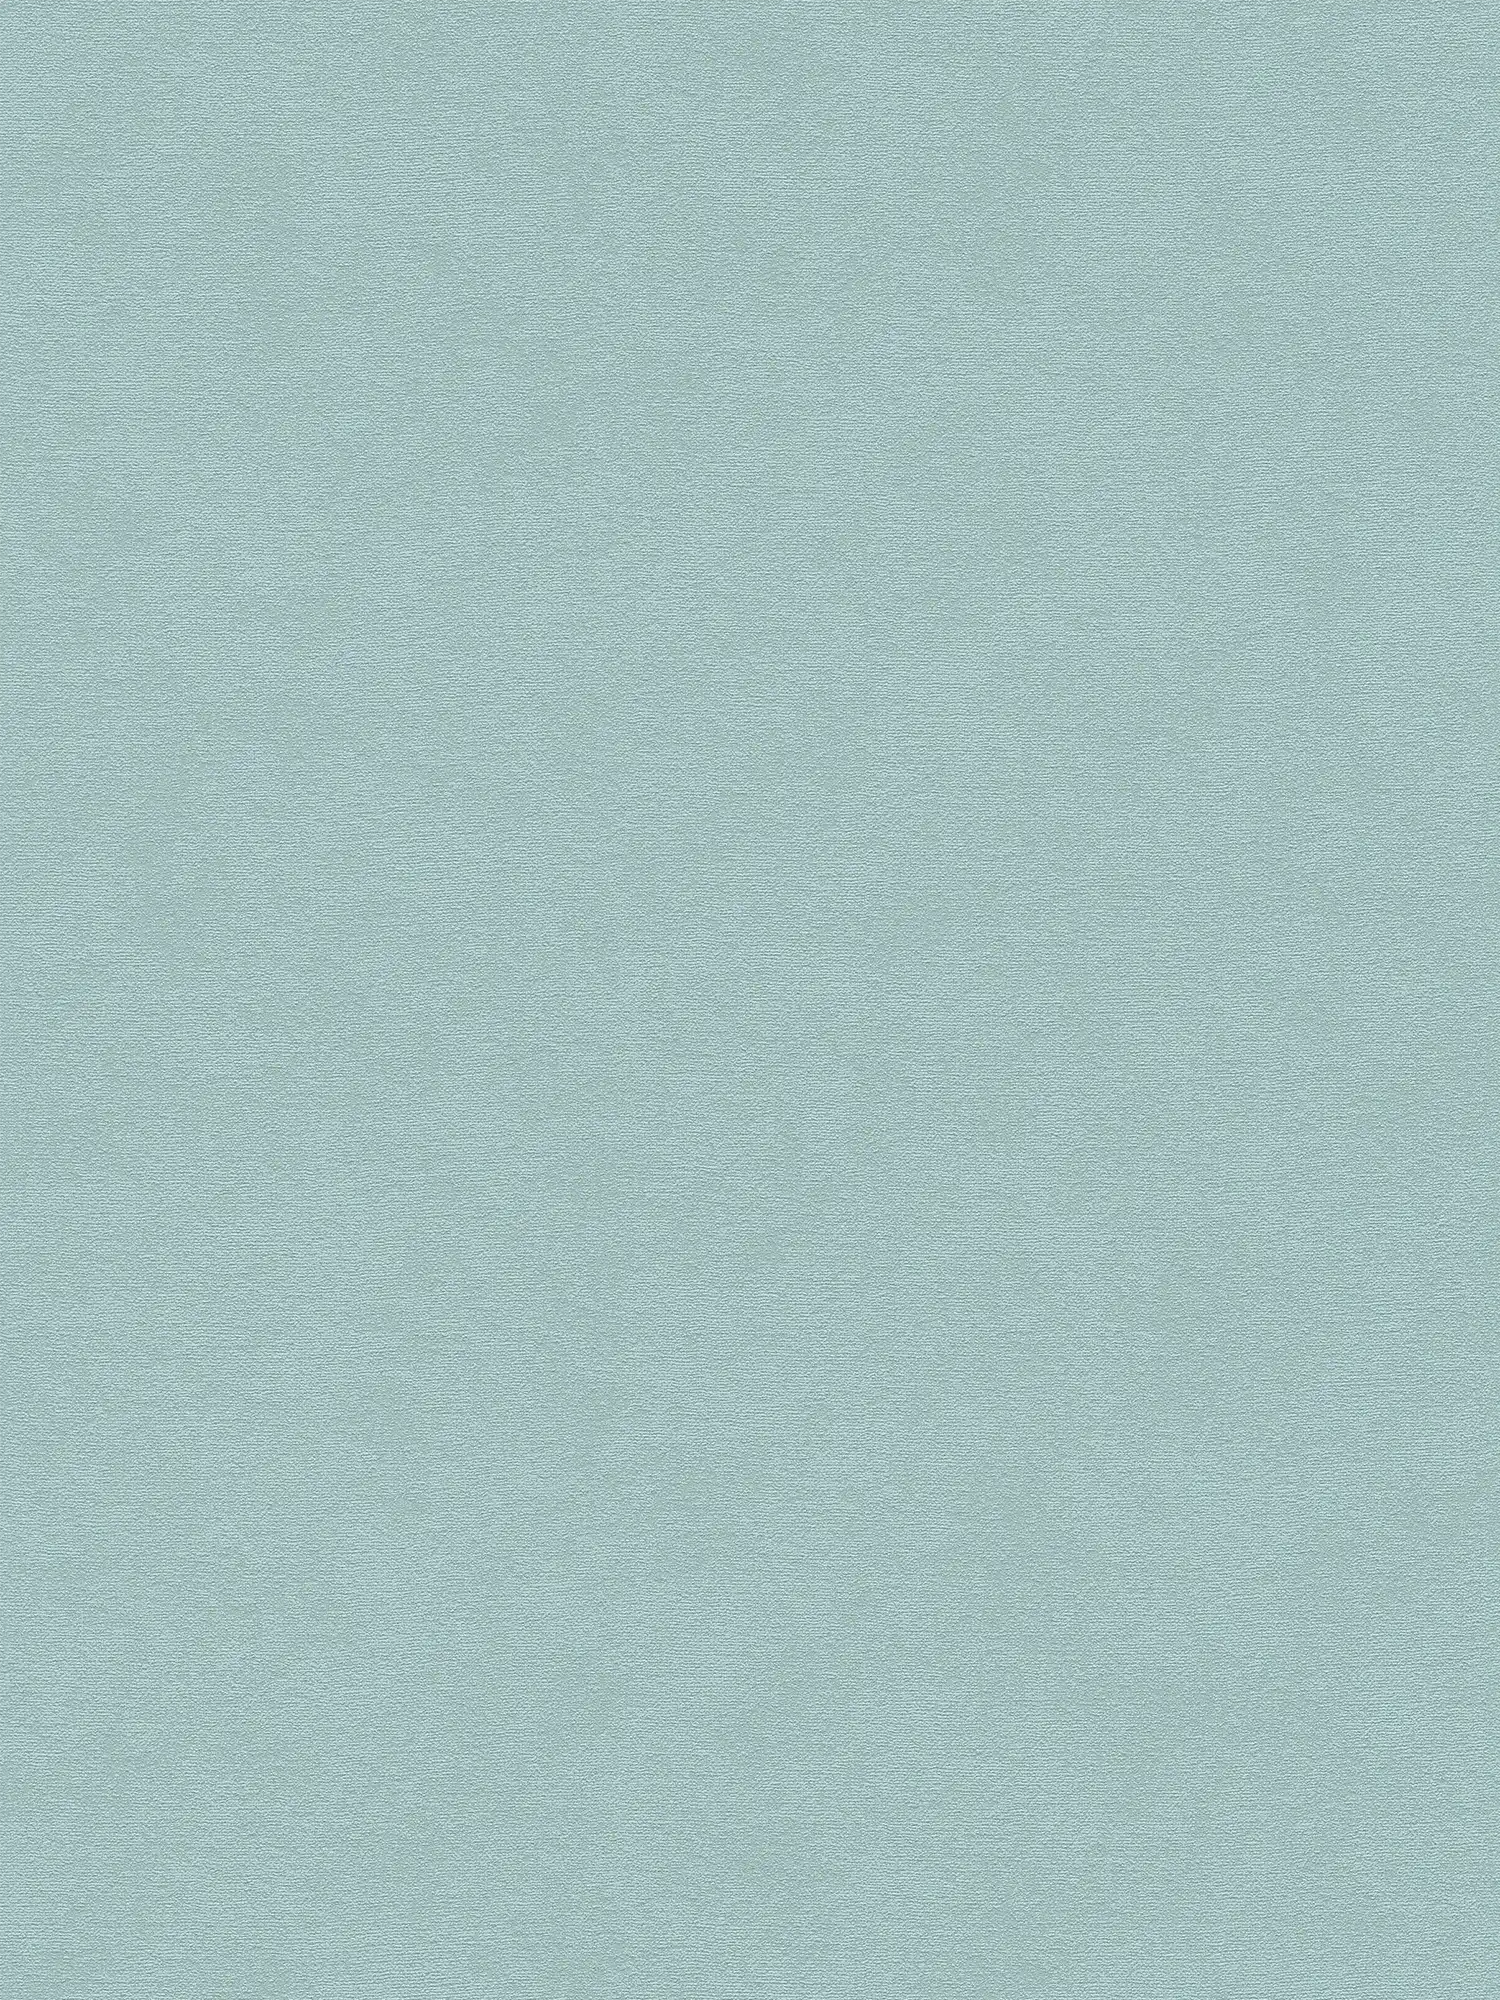 Einfarbige Vliestapete mit dezenter Oberflächenstruktur – Blau, Grün
